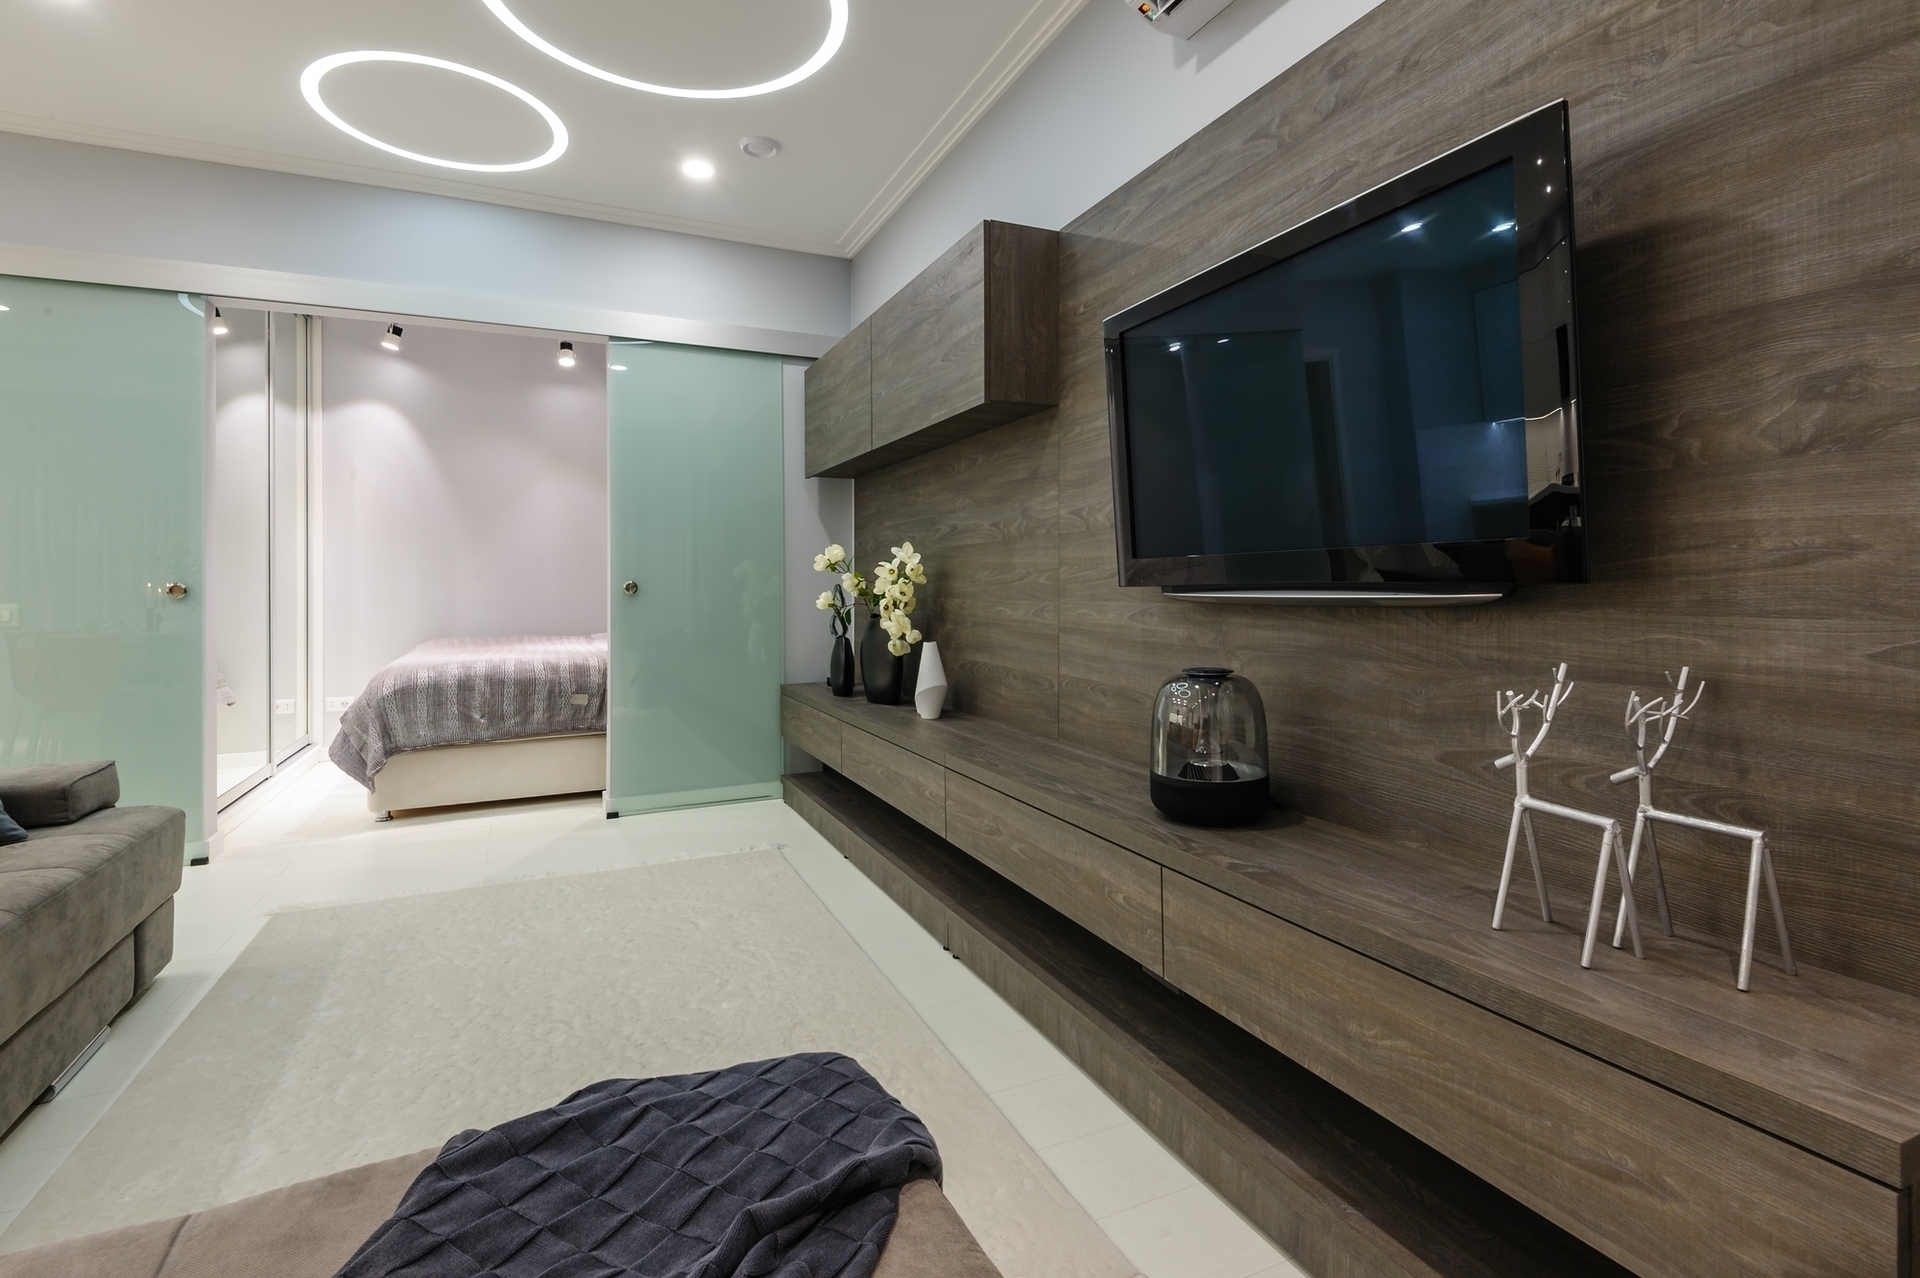 Modern white living studio with bedroom doors open